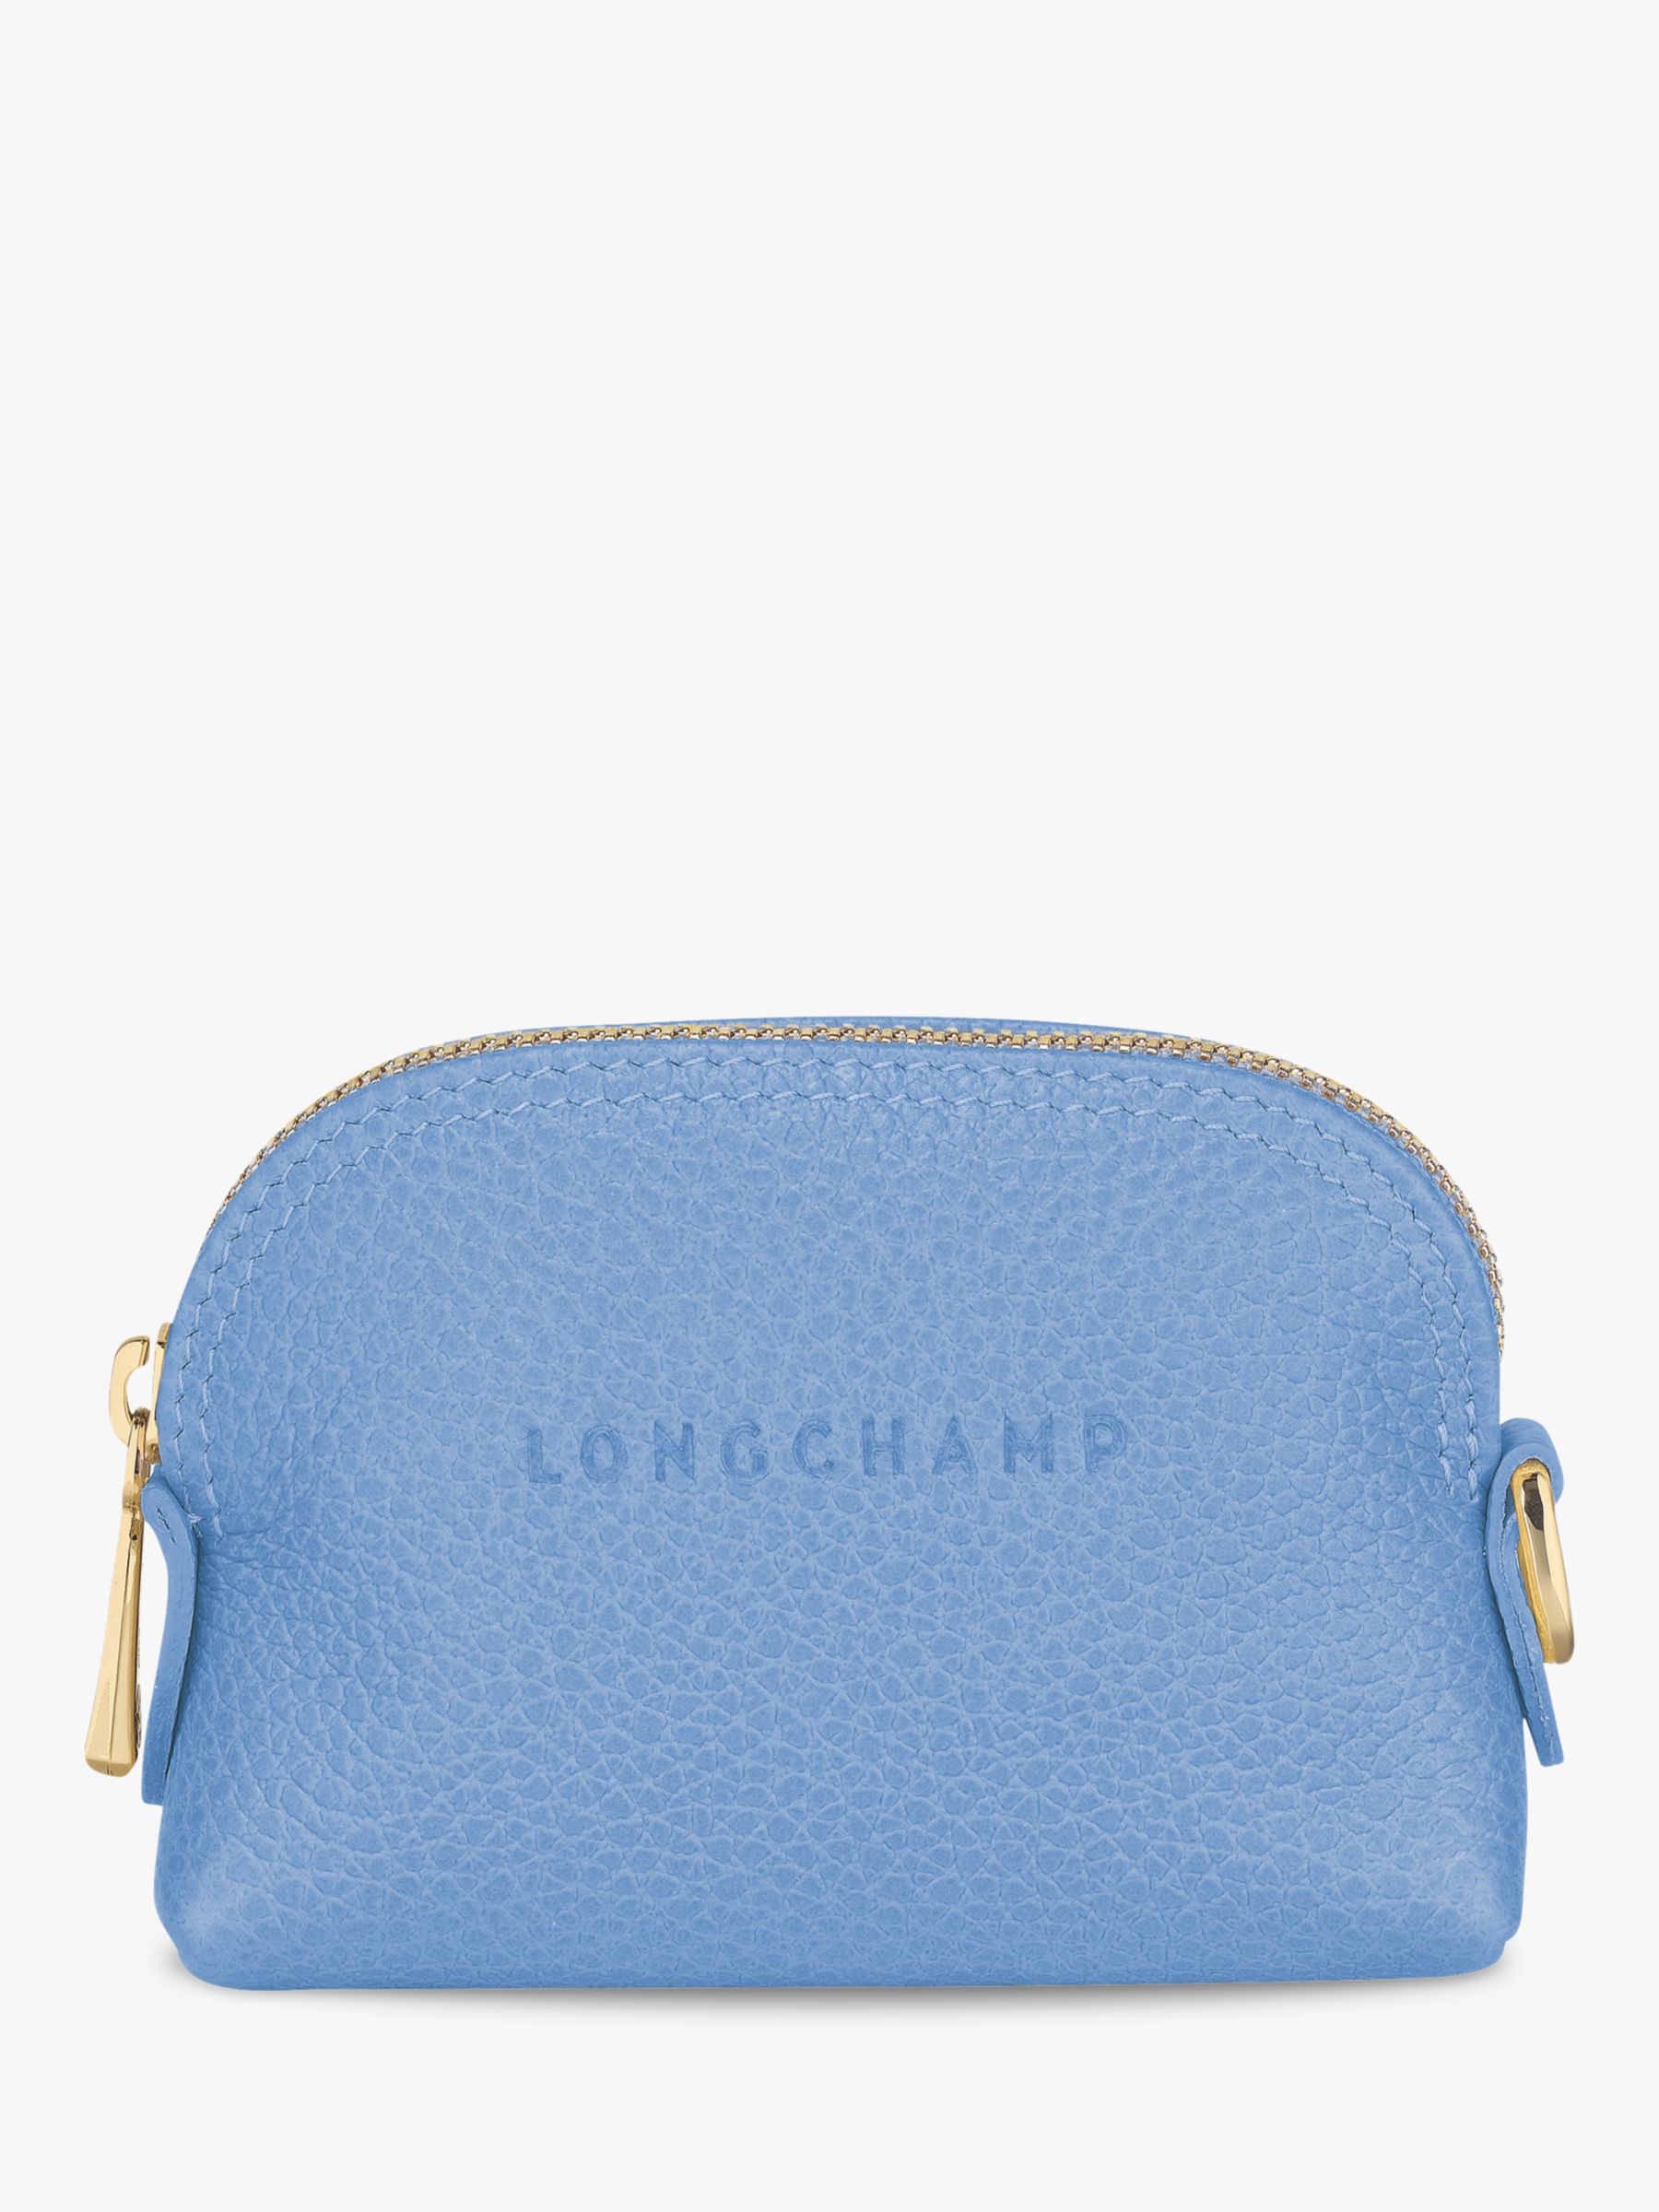 Longchamp Le Foulonné Leather Coin Purse, Chestnut at John Lewis & Partners